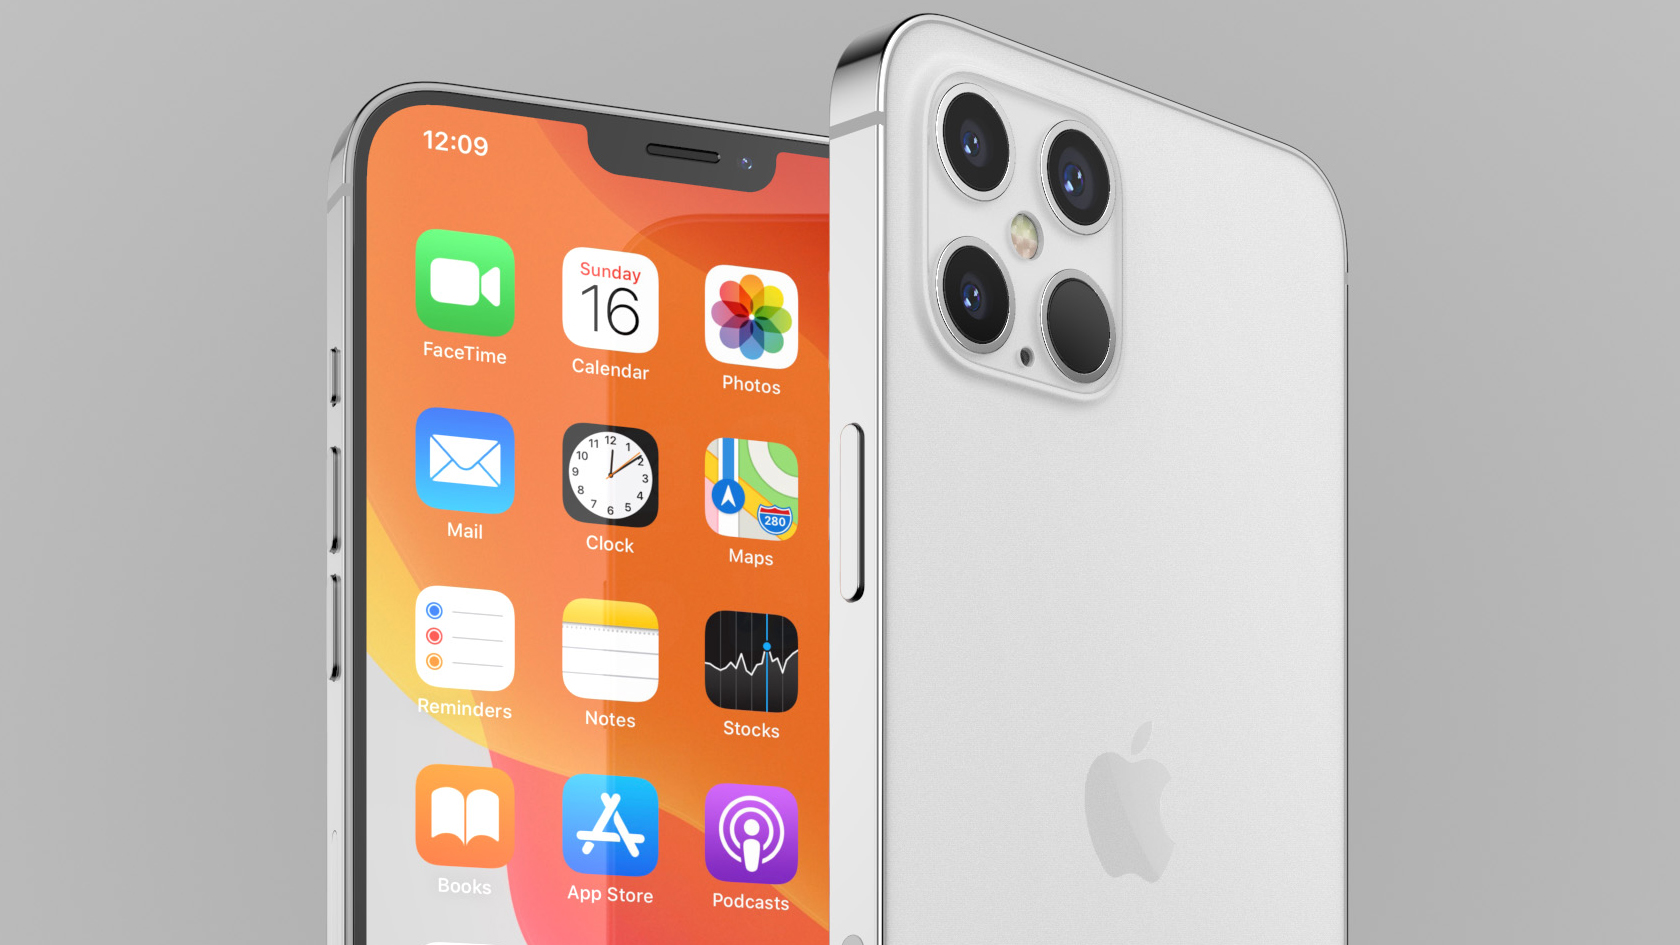 L'iPhone 12 Series s'ha endarrerit fins al quart trimestre del 2020 segons el CEO de Broadcom